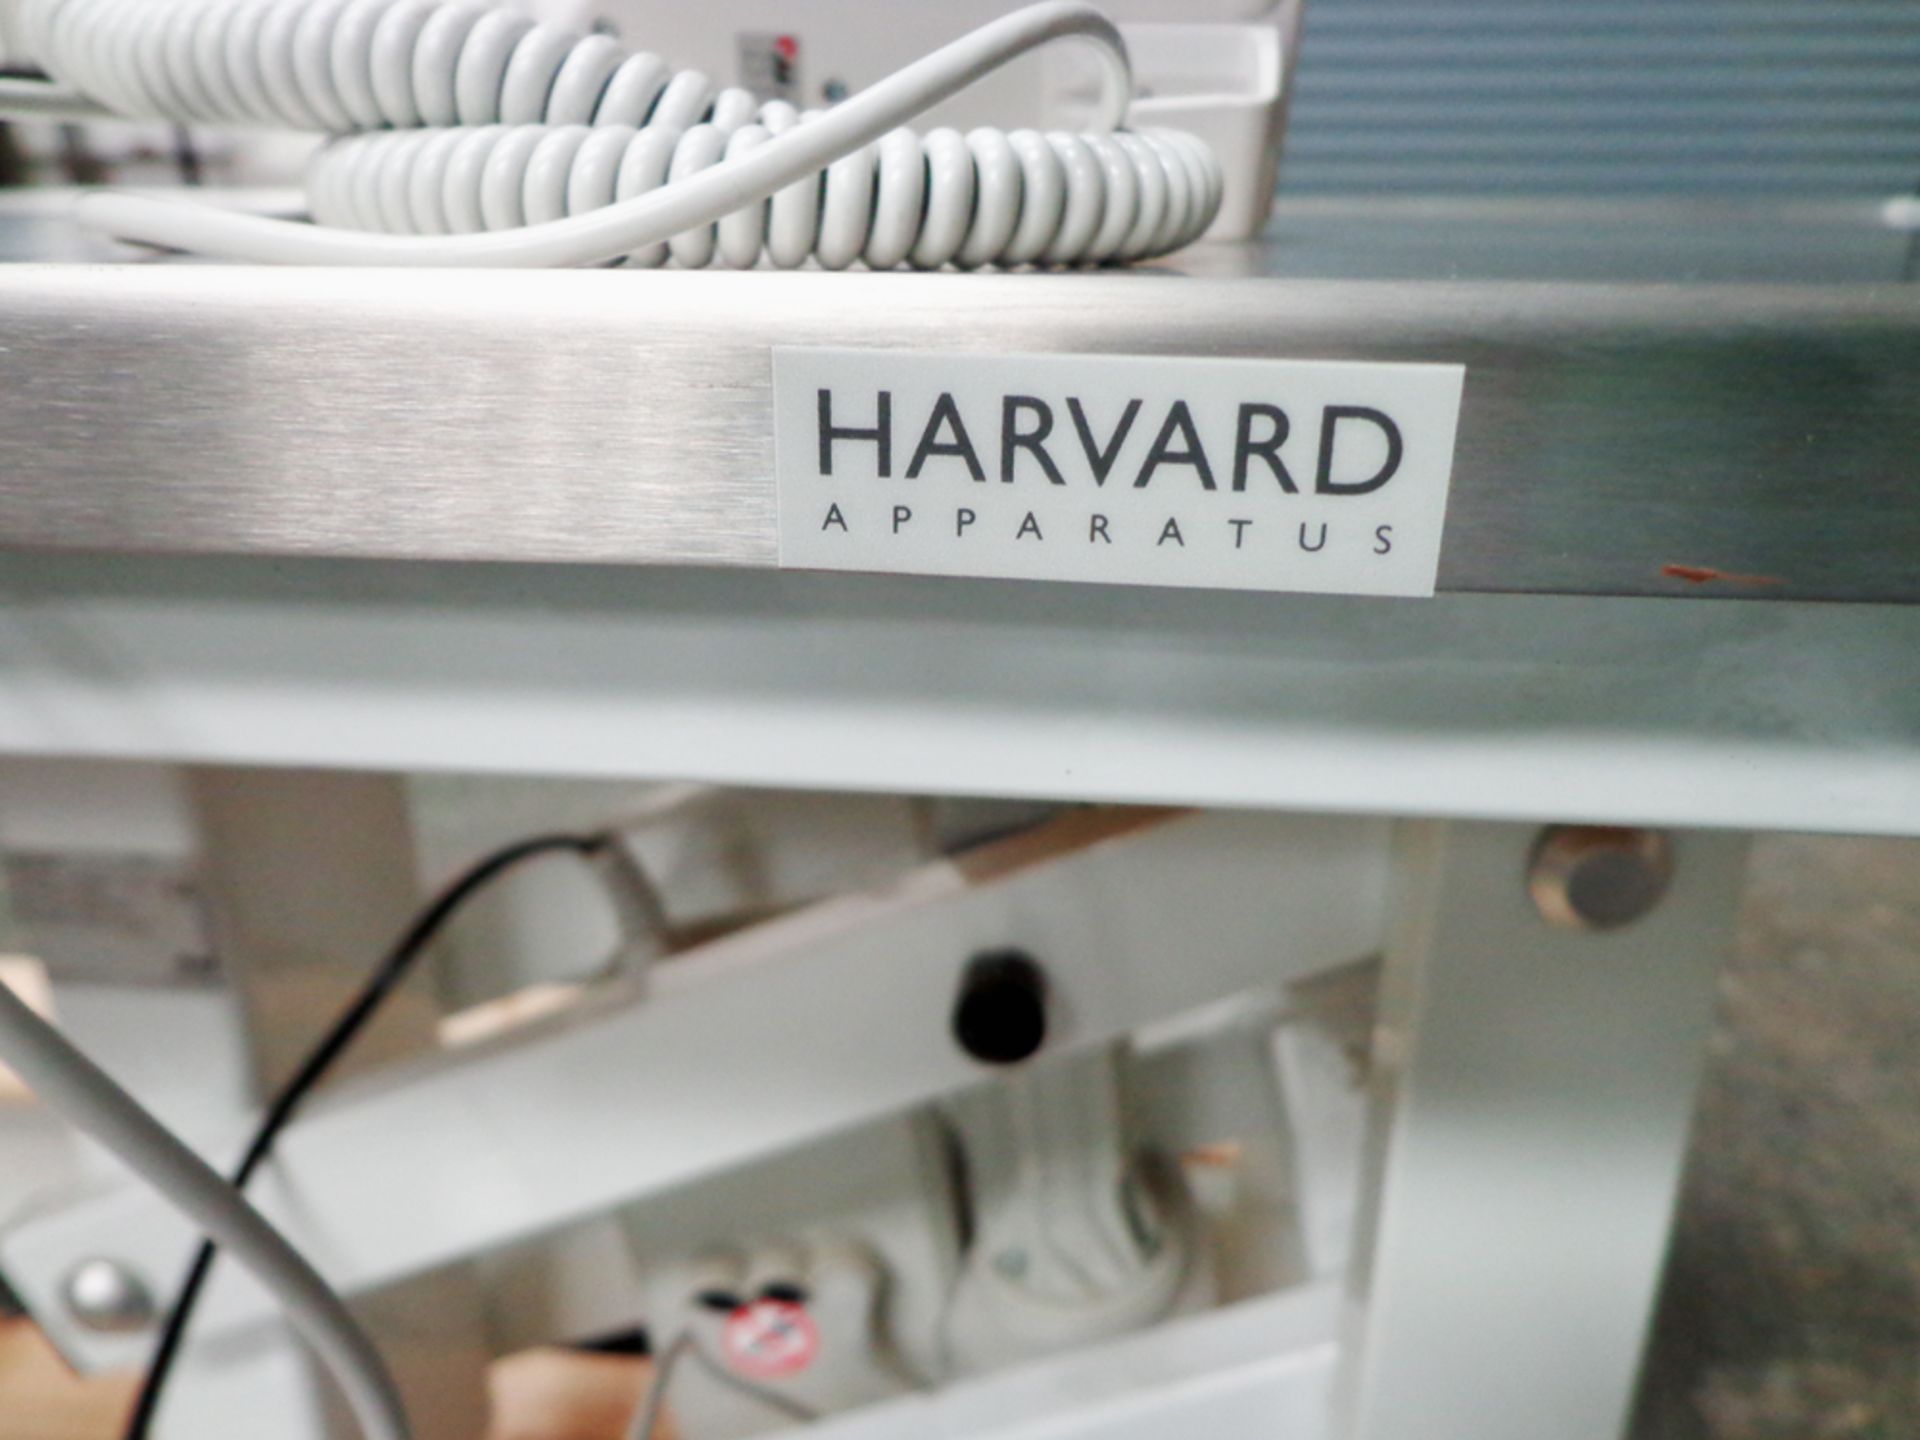 Harvard Apperatus Medium Hydraulic Sergical Table, SWL 150kgs. - Image 4 of 7